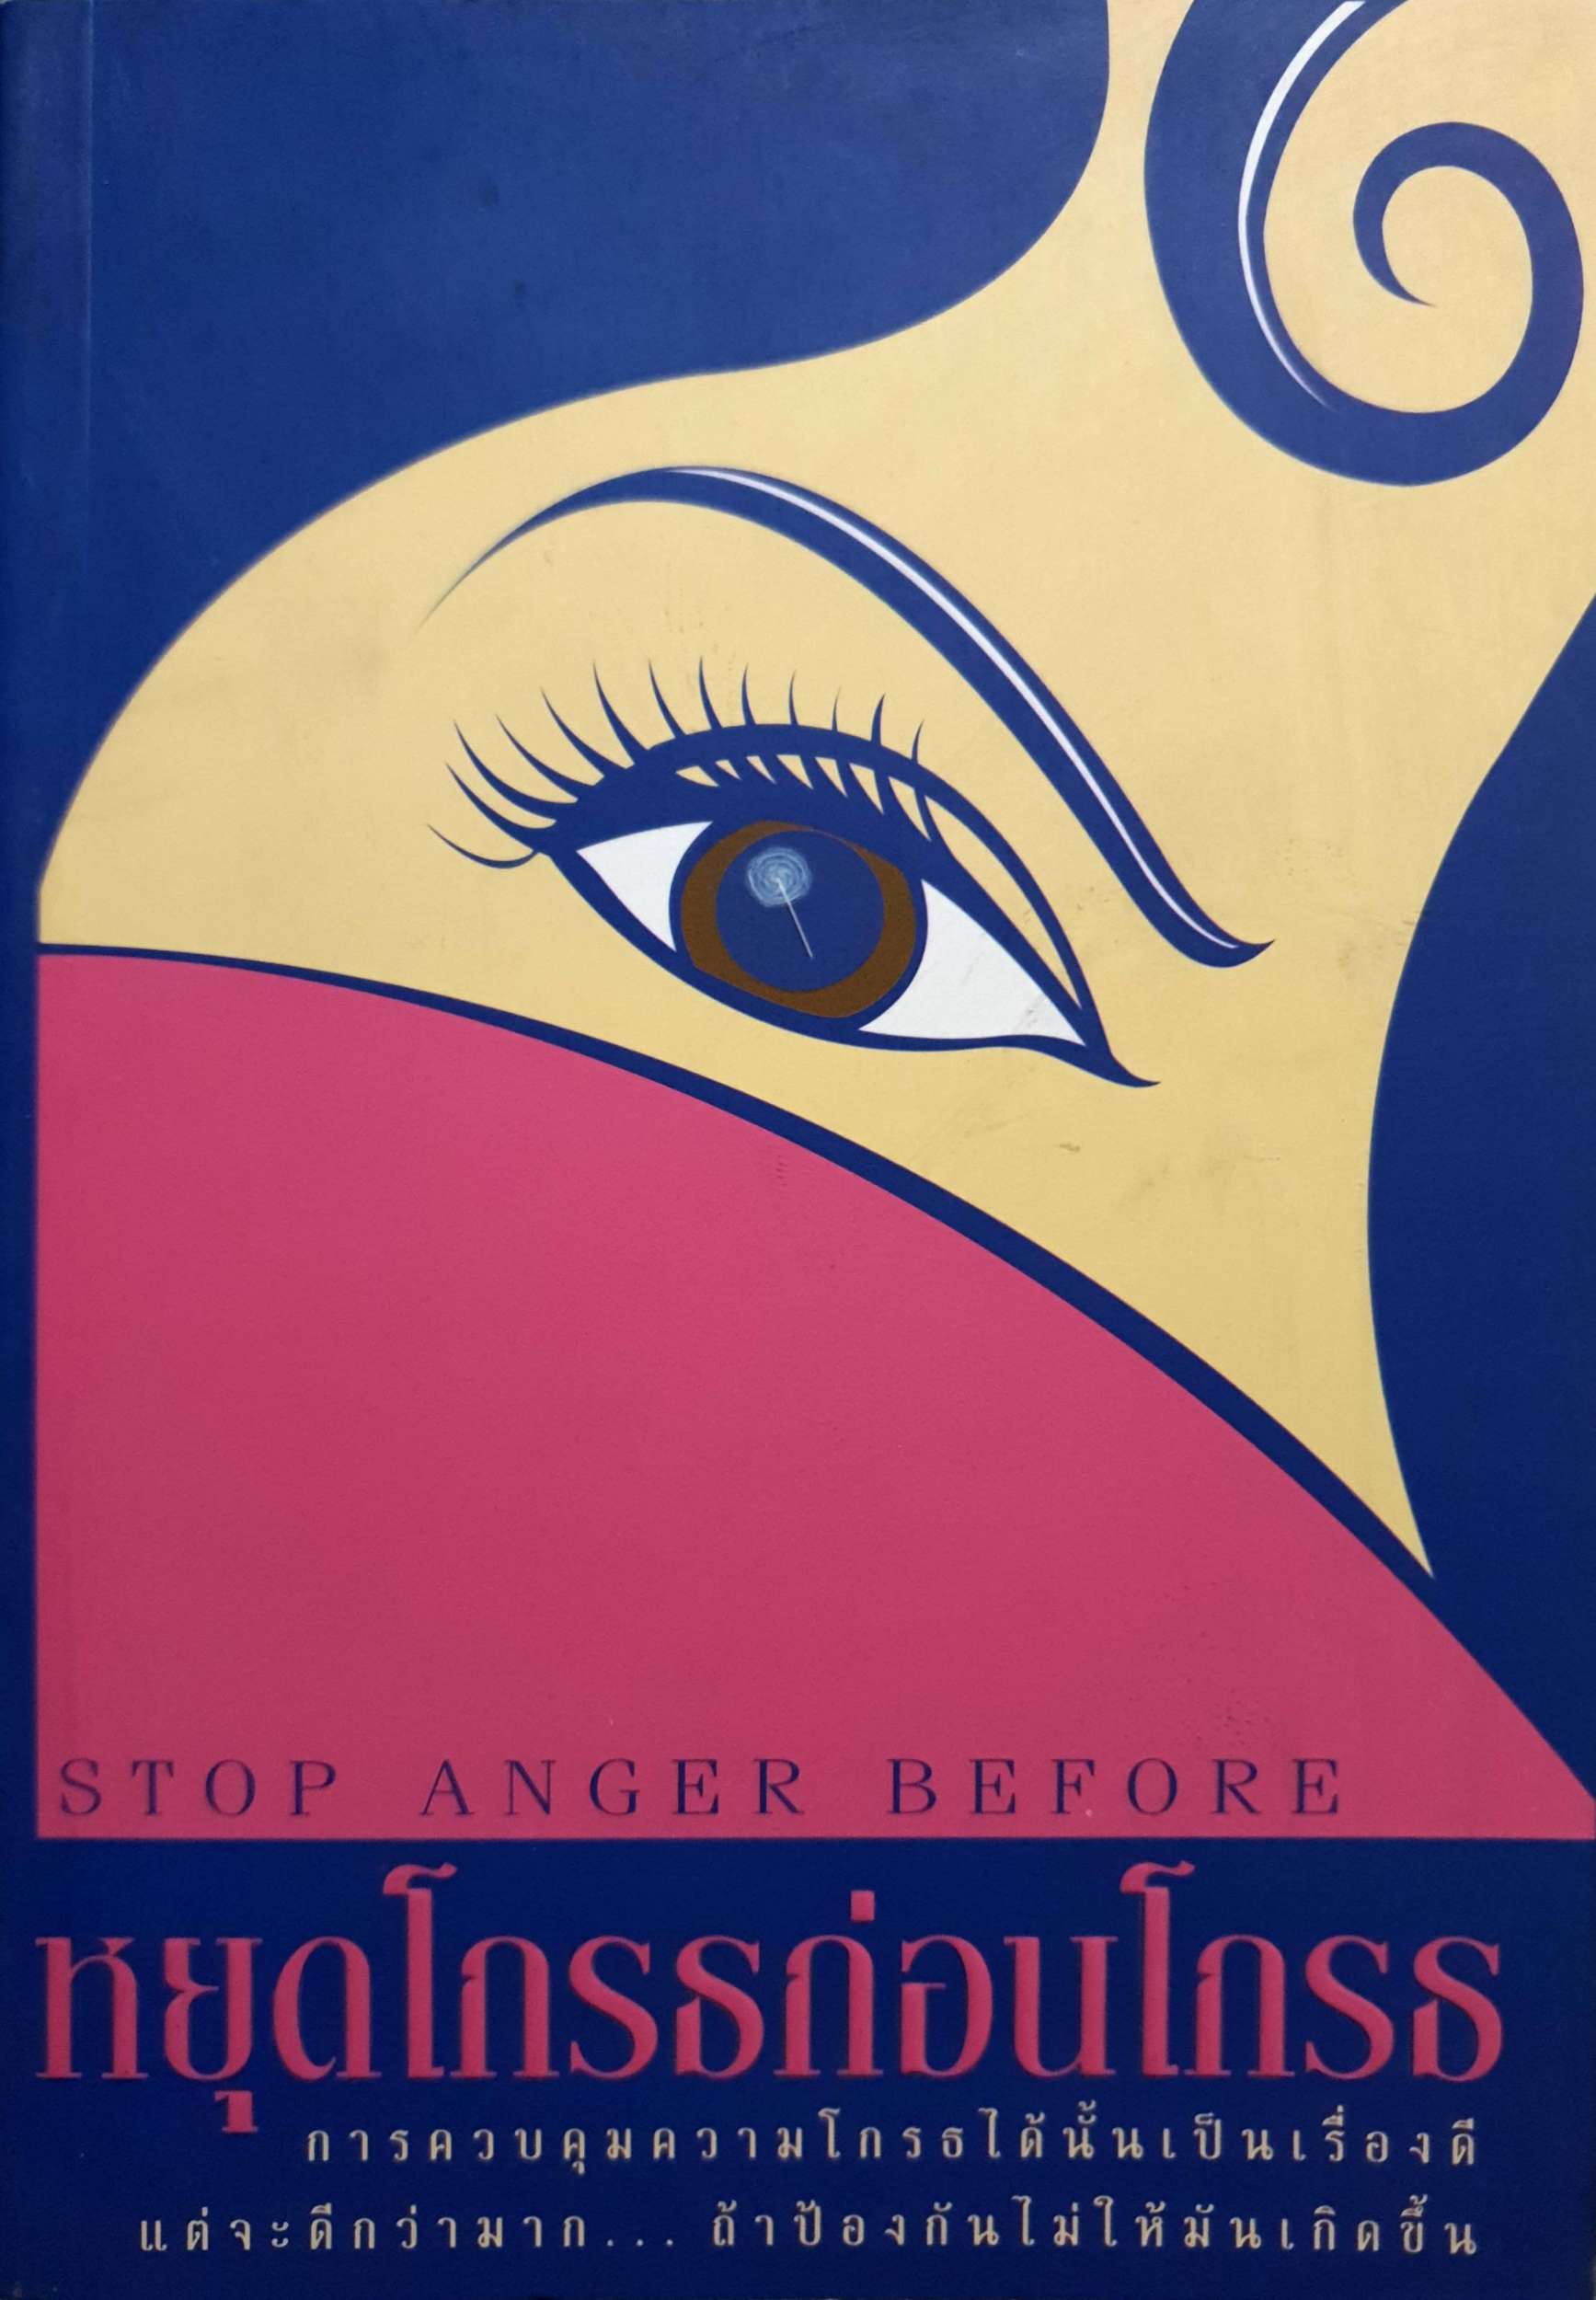 หยุดโกรธก่อนโกรธ (Stop anger before)